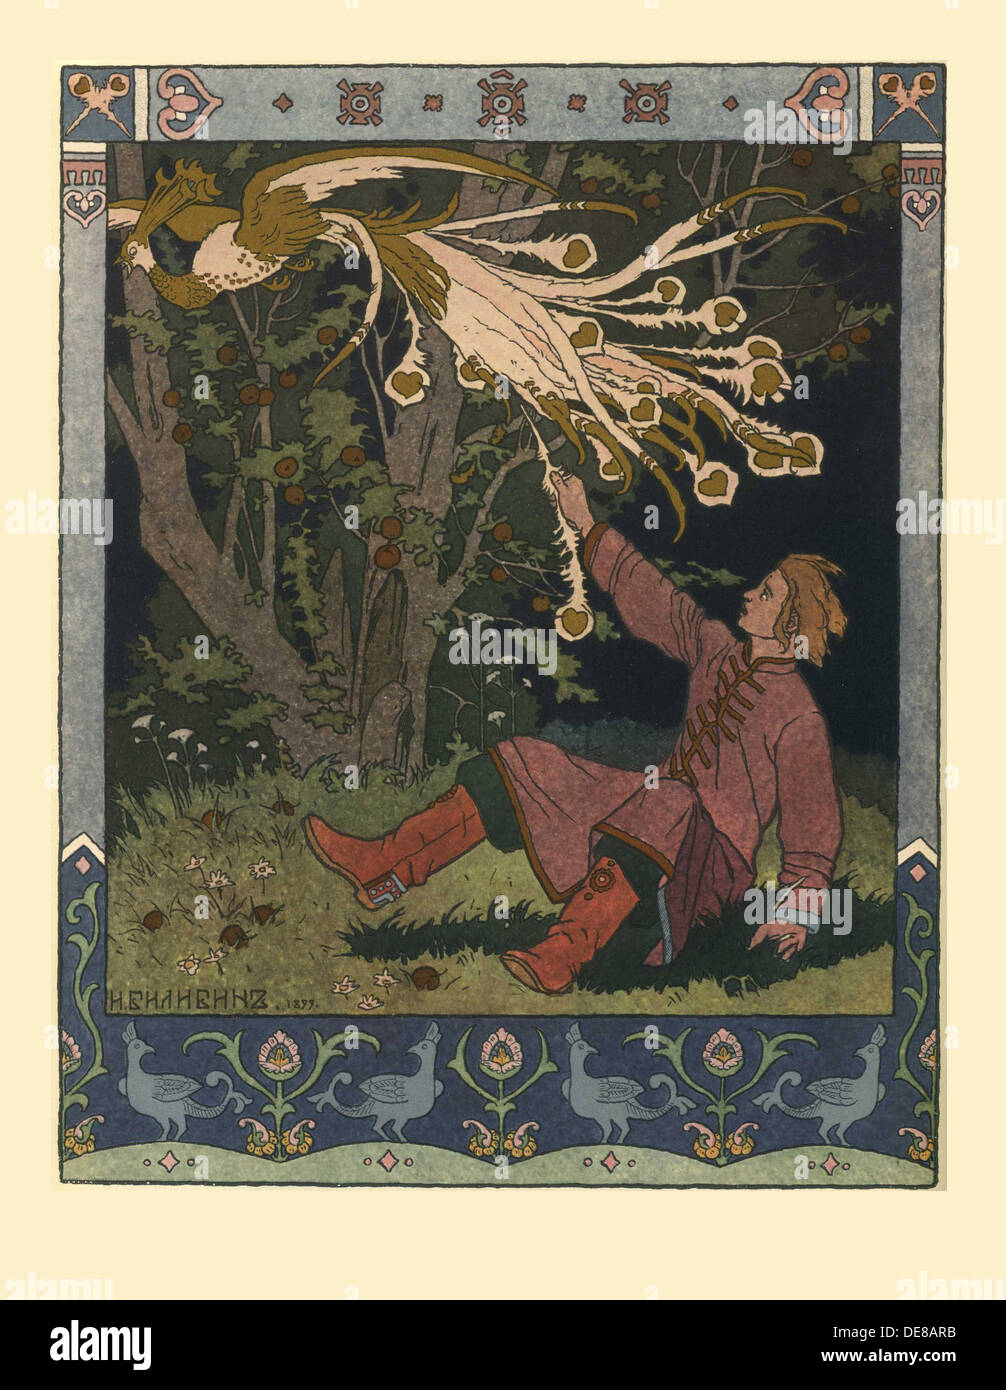 Illustrazione per la fiaba di Ivan Tsarevich, il Firebird e il Lupo grigio, 1902. Artista: Bilibin, Ivan Yakovlevich (1876-1942) Foto Stock